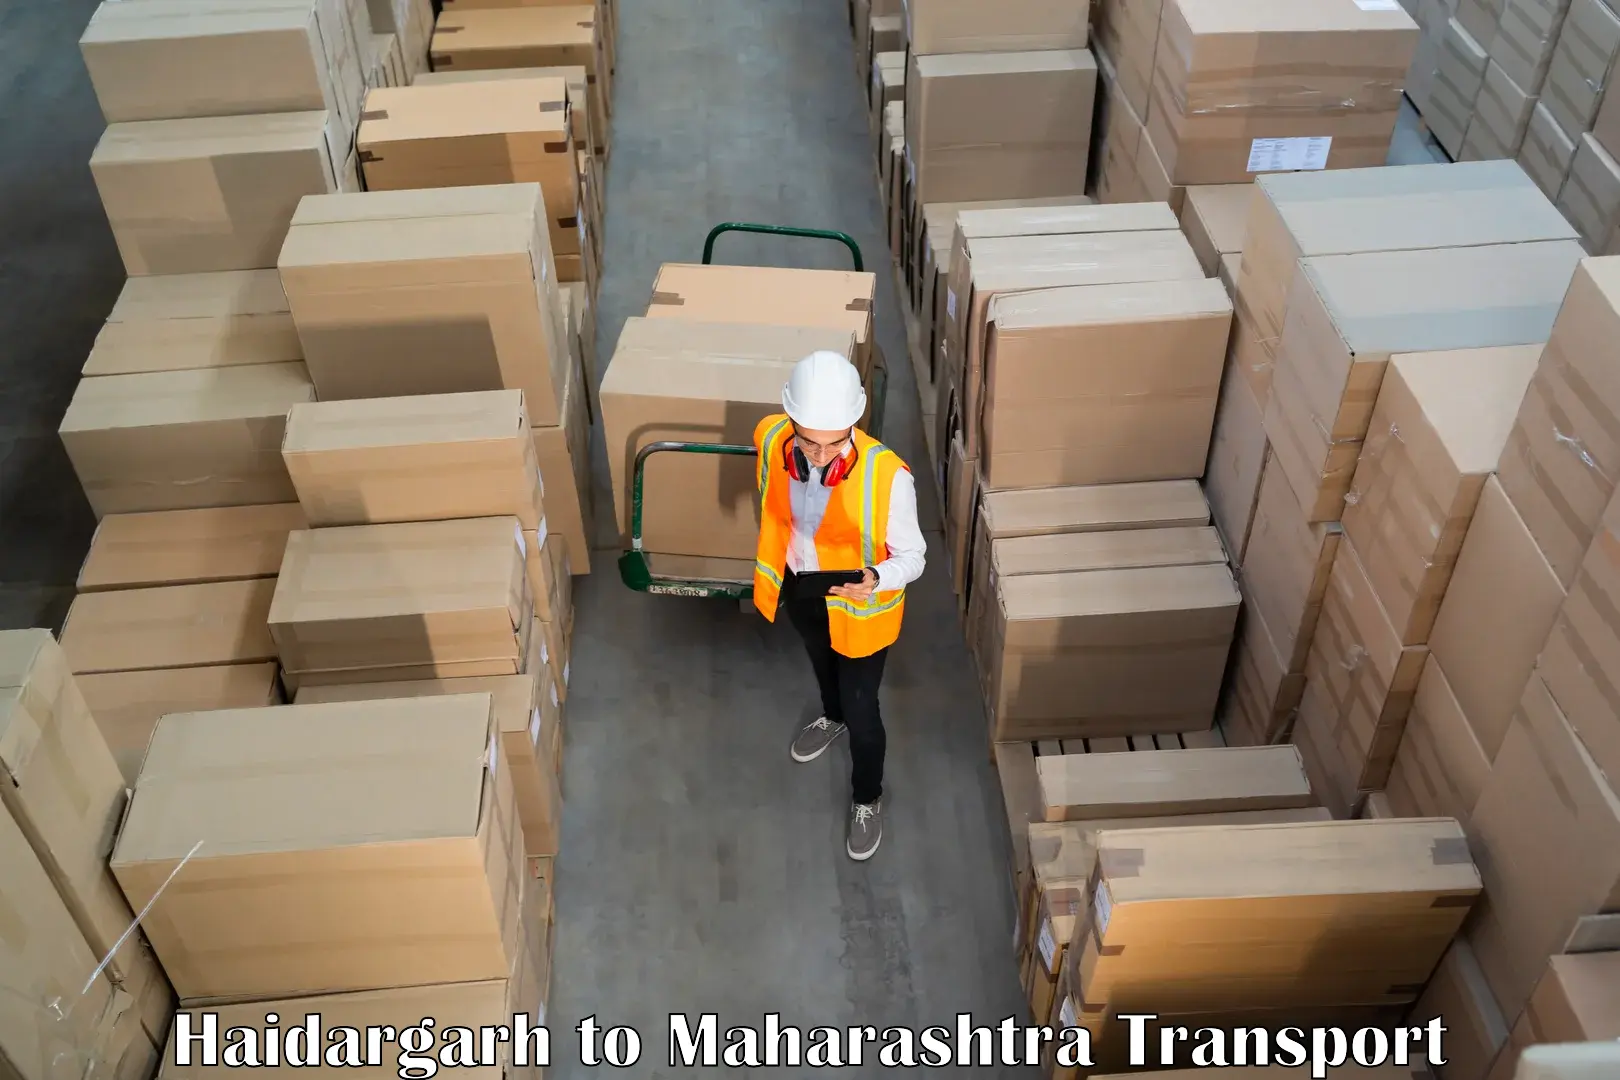 Furniture transport service Haidargarh to Lasalgaon